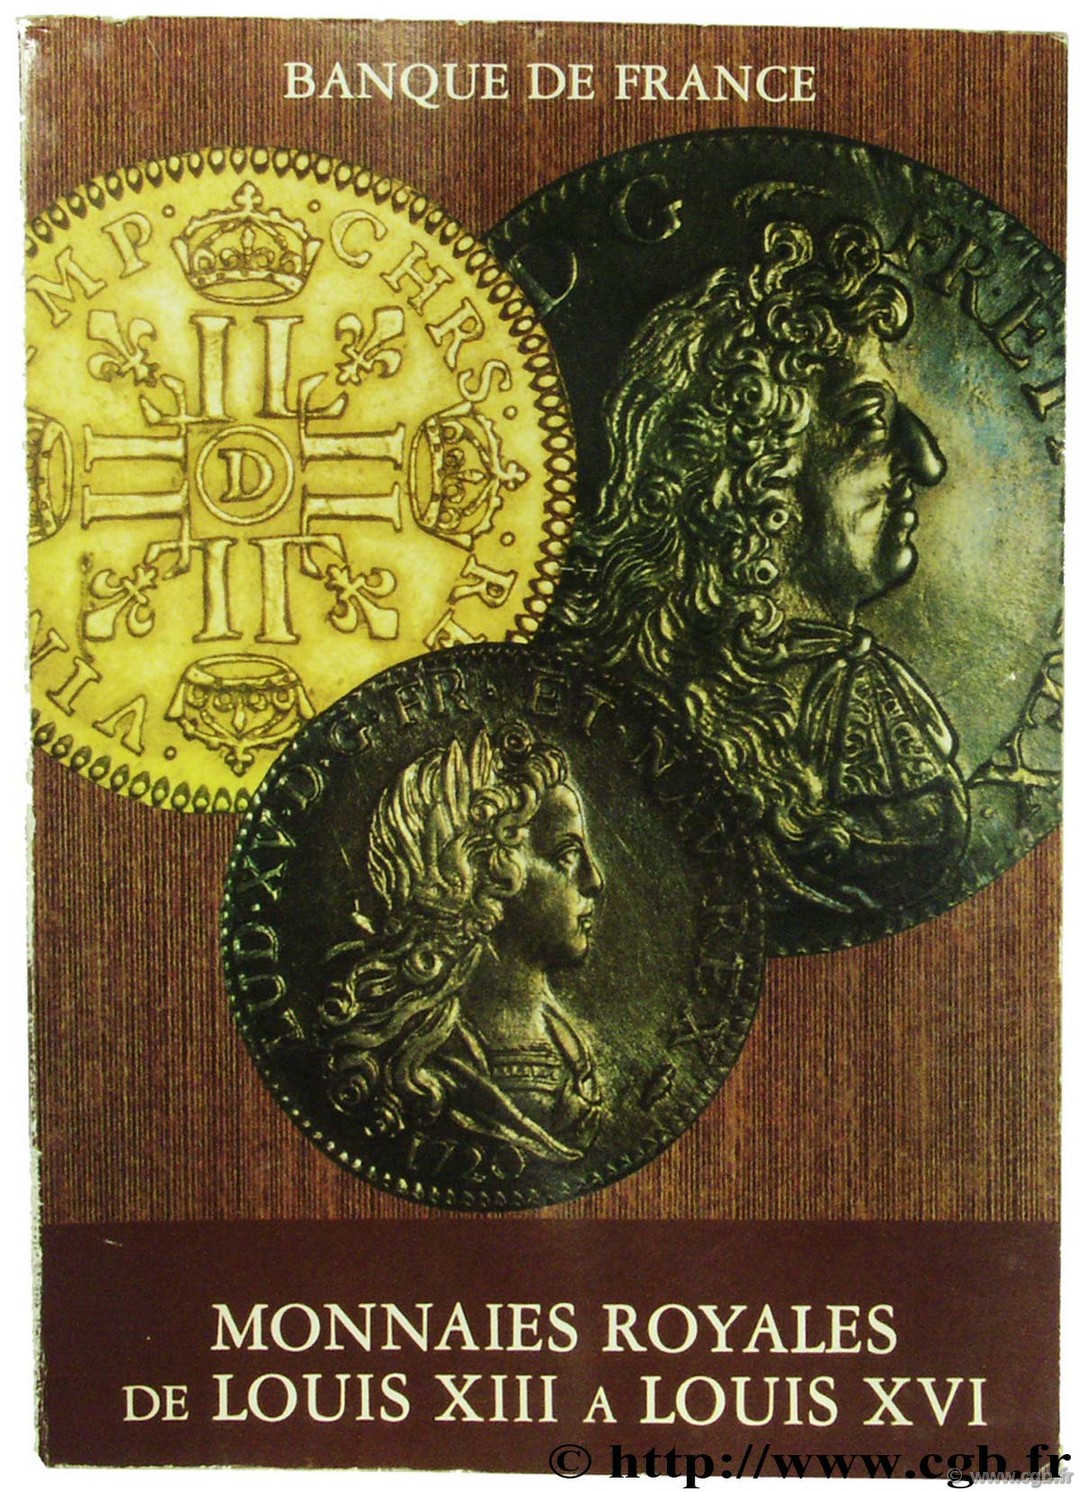 Monnaies royales de Louis XIII à Louis XVI BEAUSSANT C.